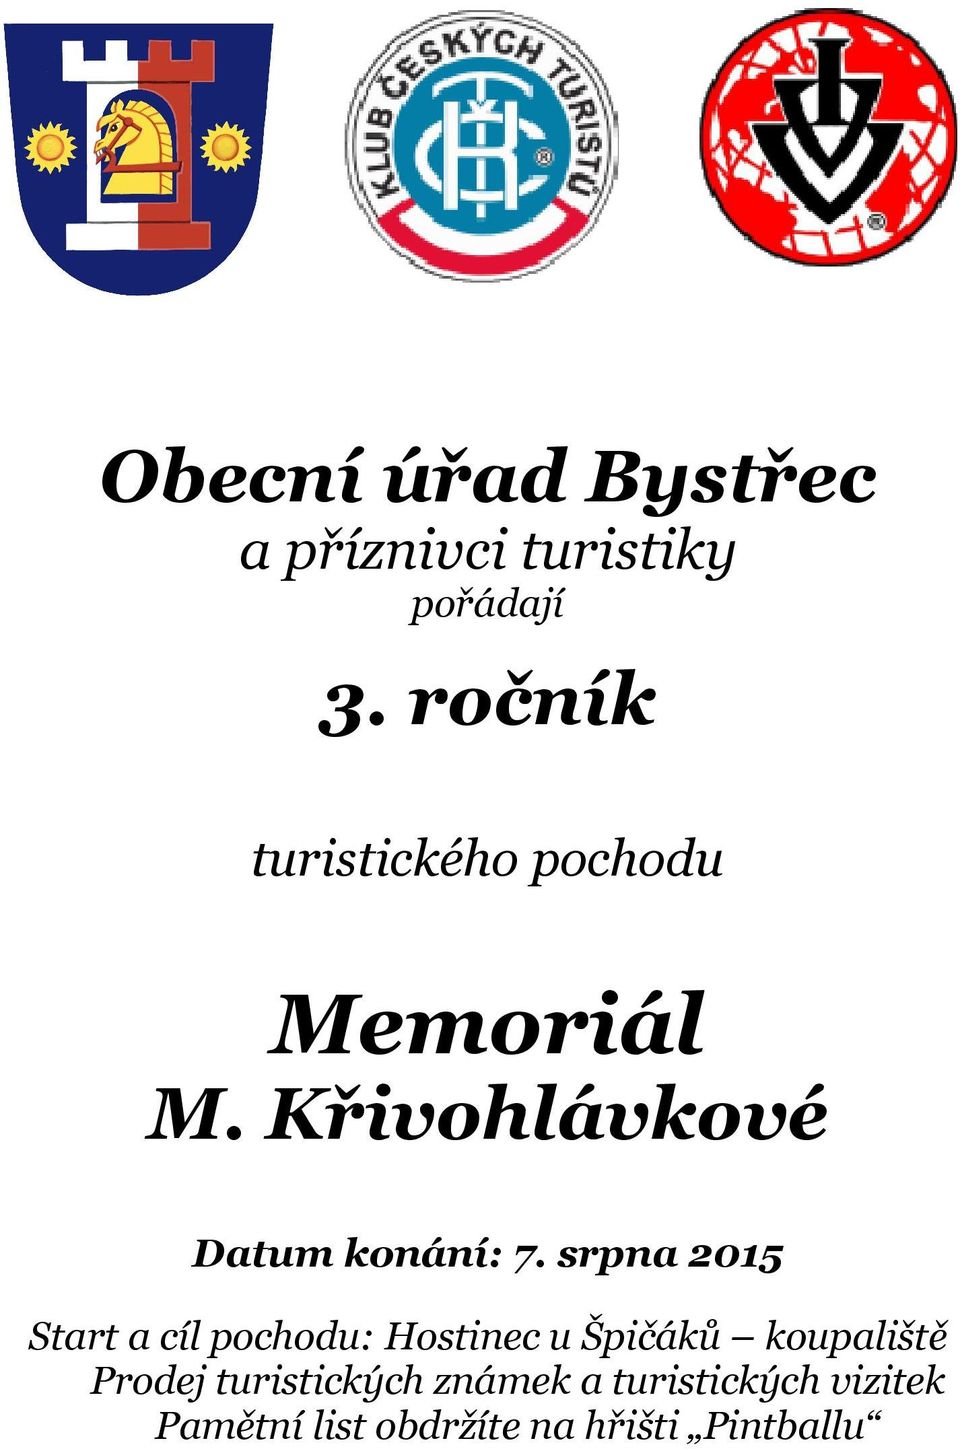 srpna 2015 Start a cíl pochodu: Hostinec u Špičáků koupaliště Prodej